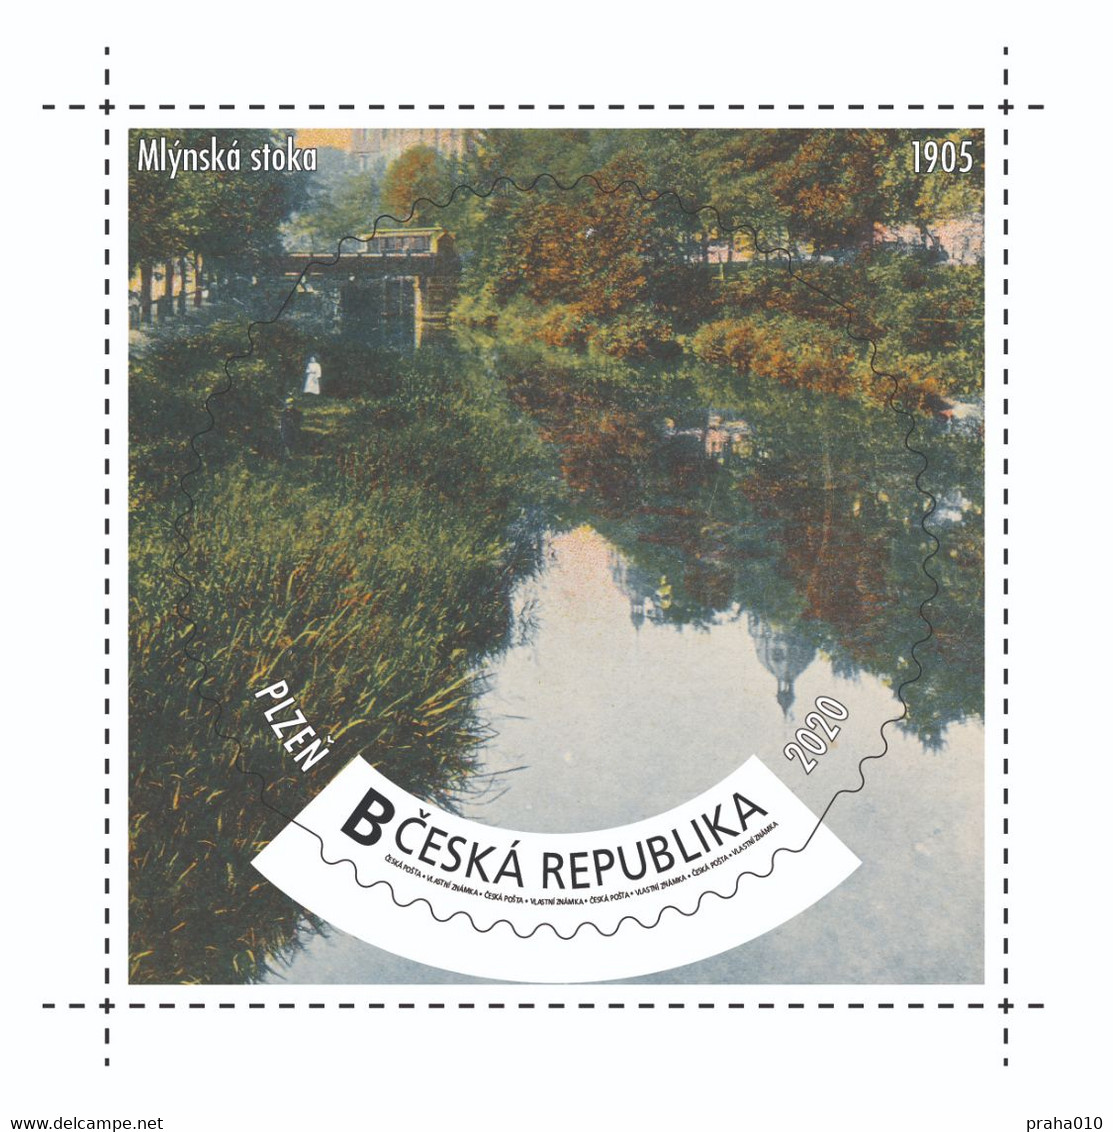 Czech Rep. / My Own Stamps (2020) 1007: City Plzen (1295-2020) - Pilsen (1905) Mill Drive, Park, Bridge - Nuevos